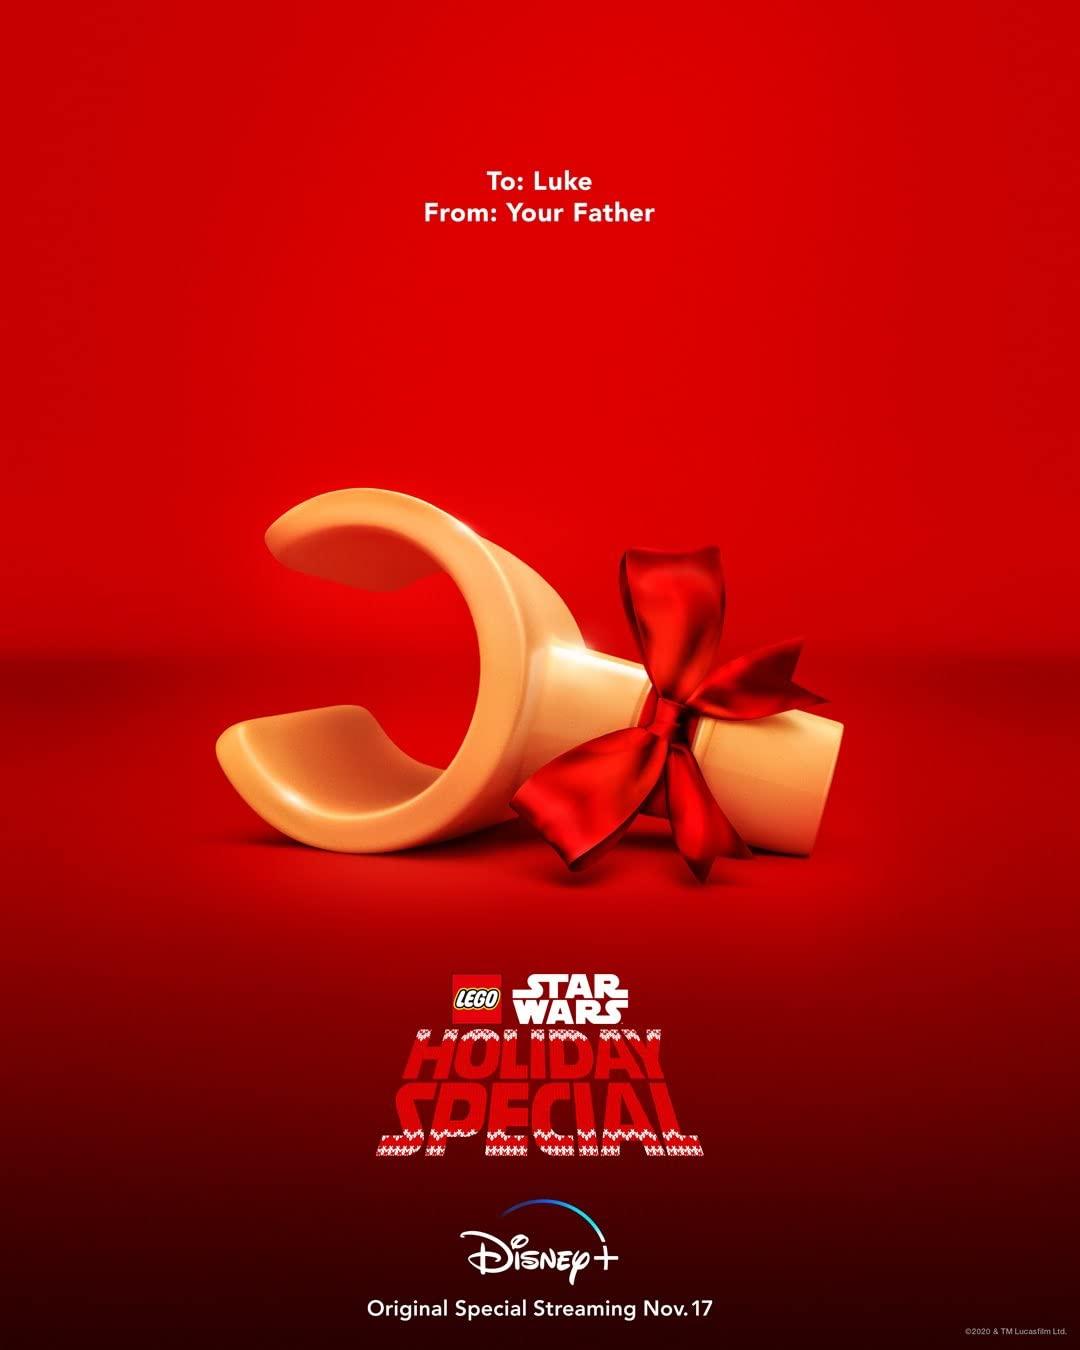 Постер фильма ЛЕГО Звездные войны: Праздничный спецвыпуск | The Lego Star Wars Holiday Special